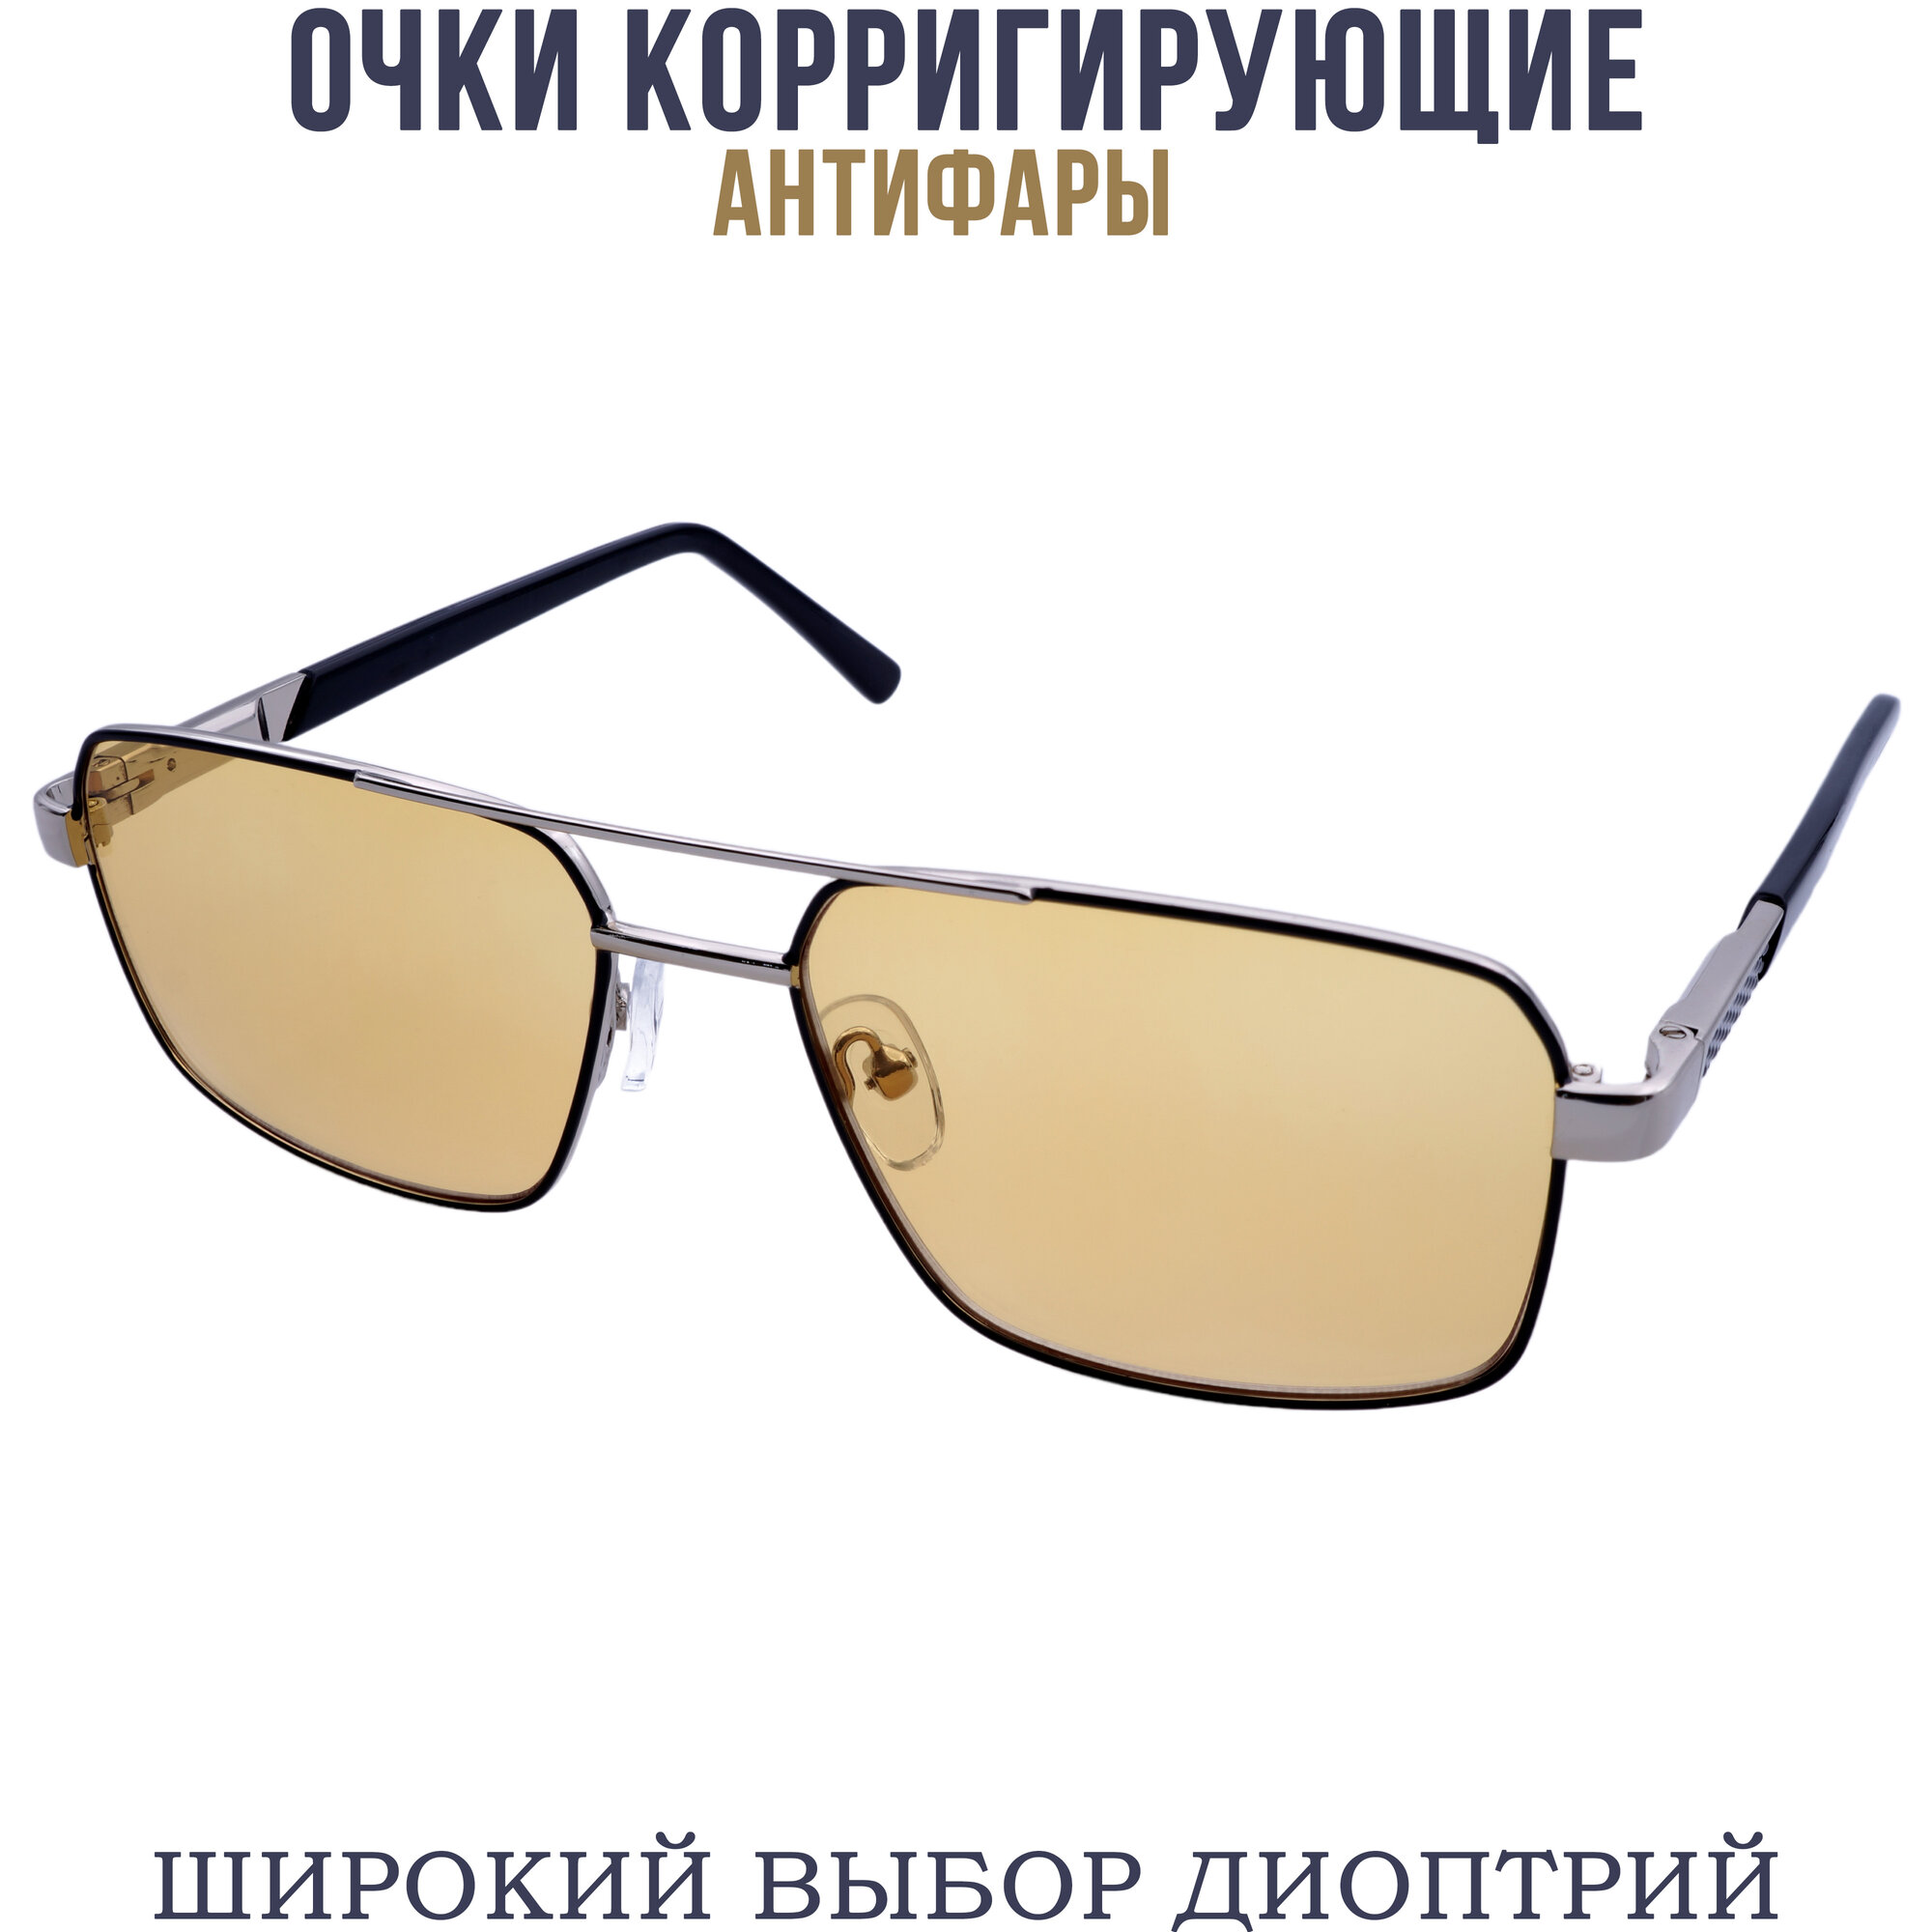 Готовые очки для зрения антифара с диоптриями pd62-64 бронзово-черный +2.75